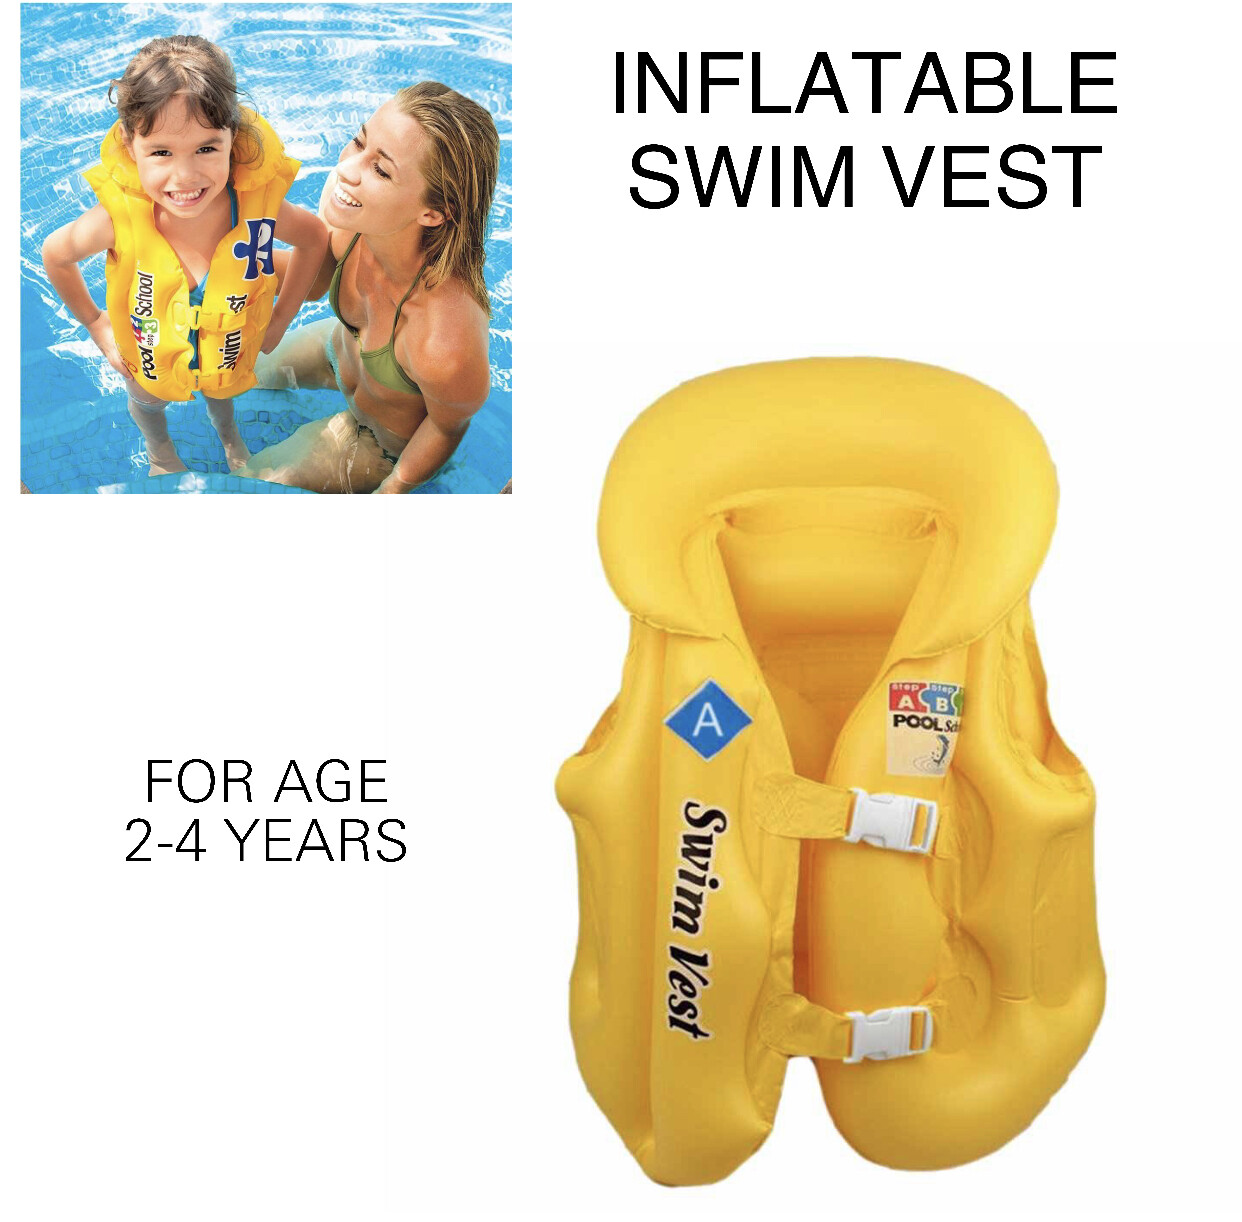 Inflatable Swim Vest